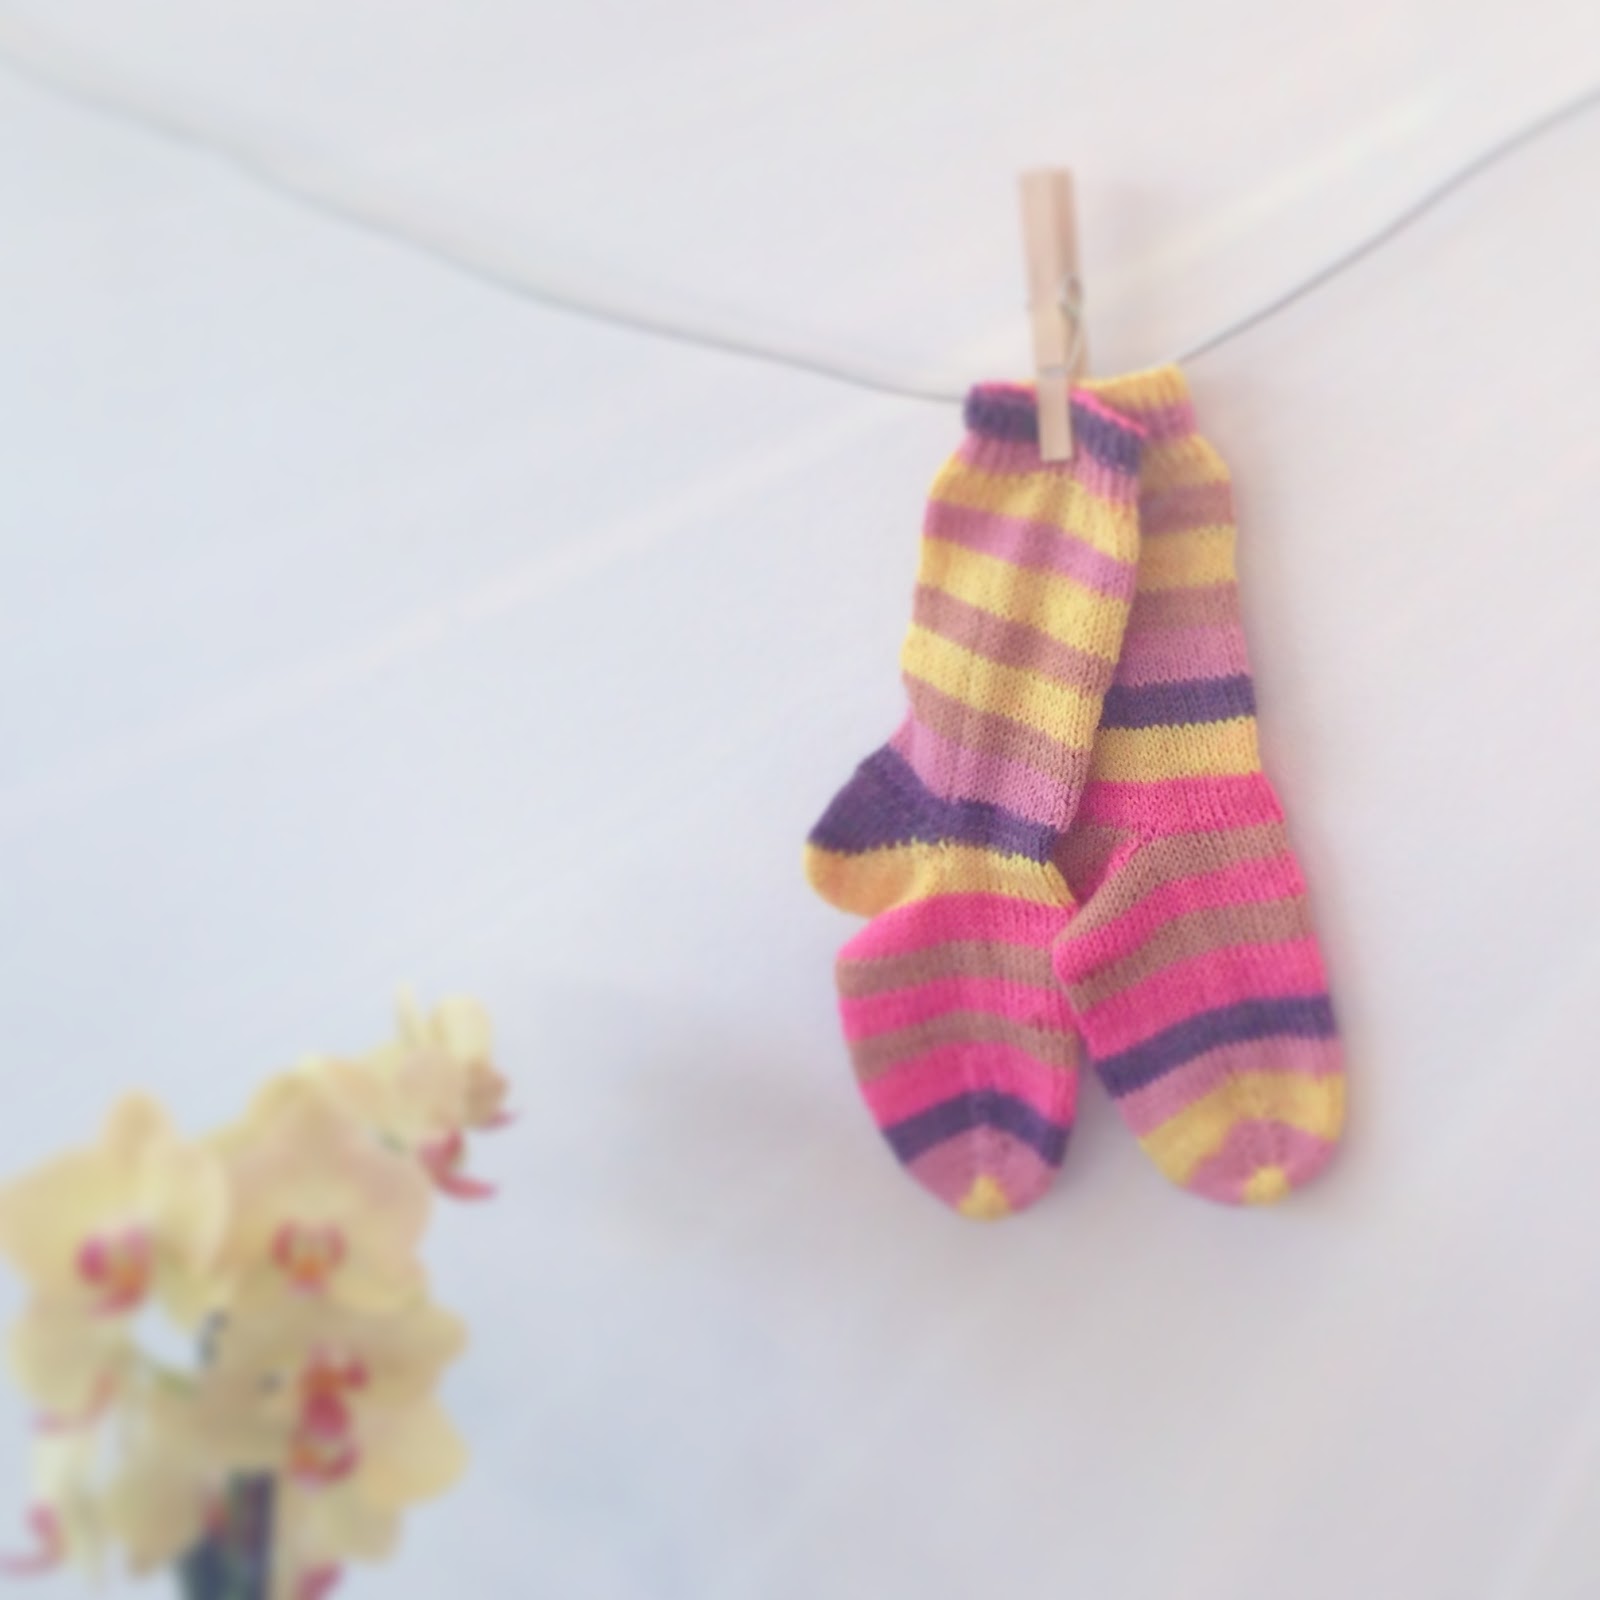 Knitting By Kaae: Lær at strikke sokker fra tåen - gratis minikursus